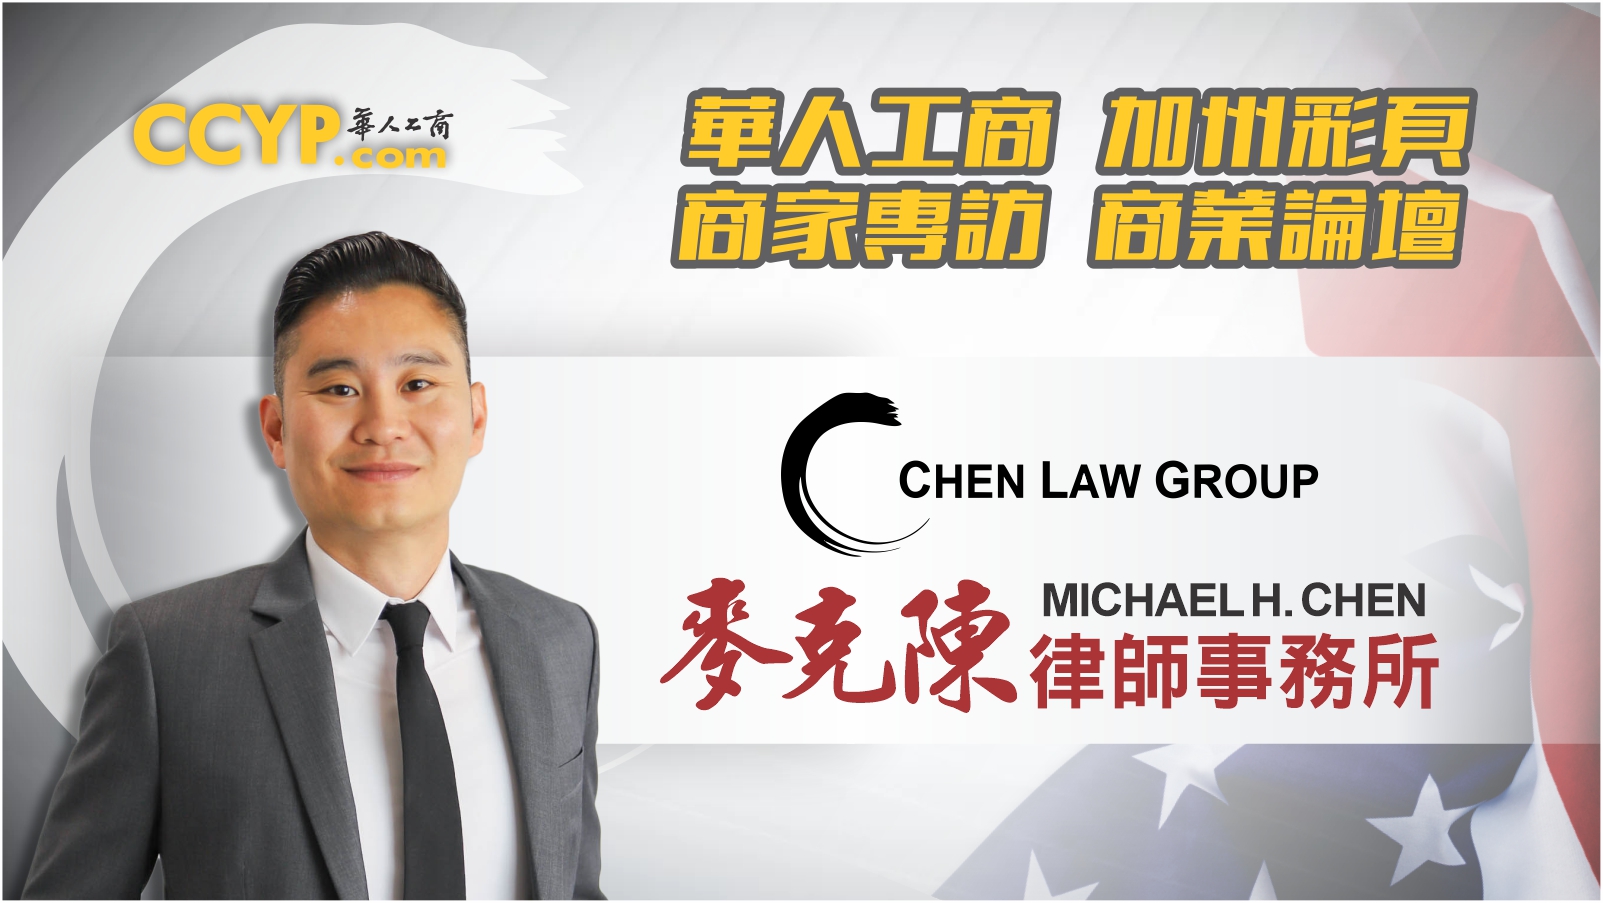 華人工商加州彩頁商家專訪 | Chen Law Group 麥克陳律師事務所